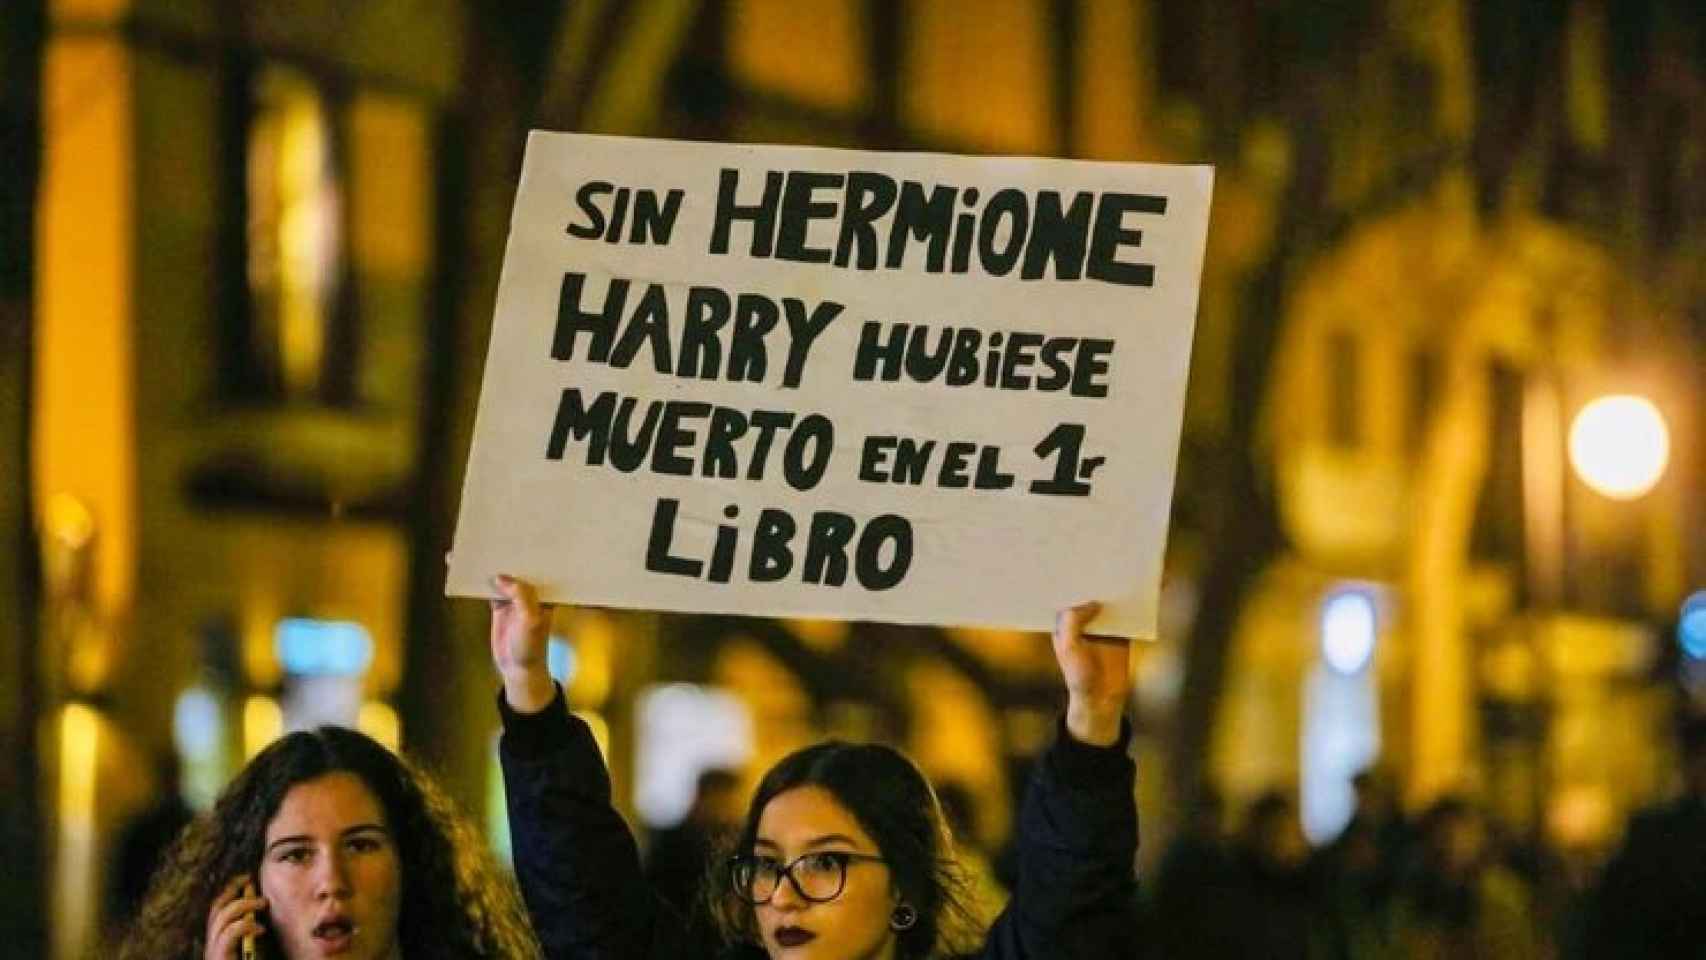 Lectoras de la saga Harry Potter manifestándose a favor de Hermione.